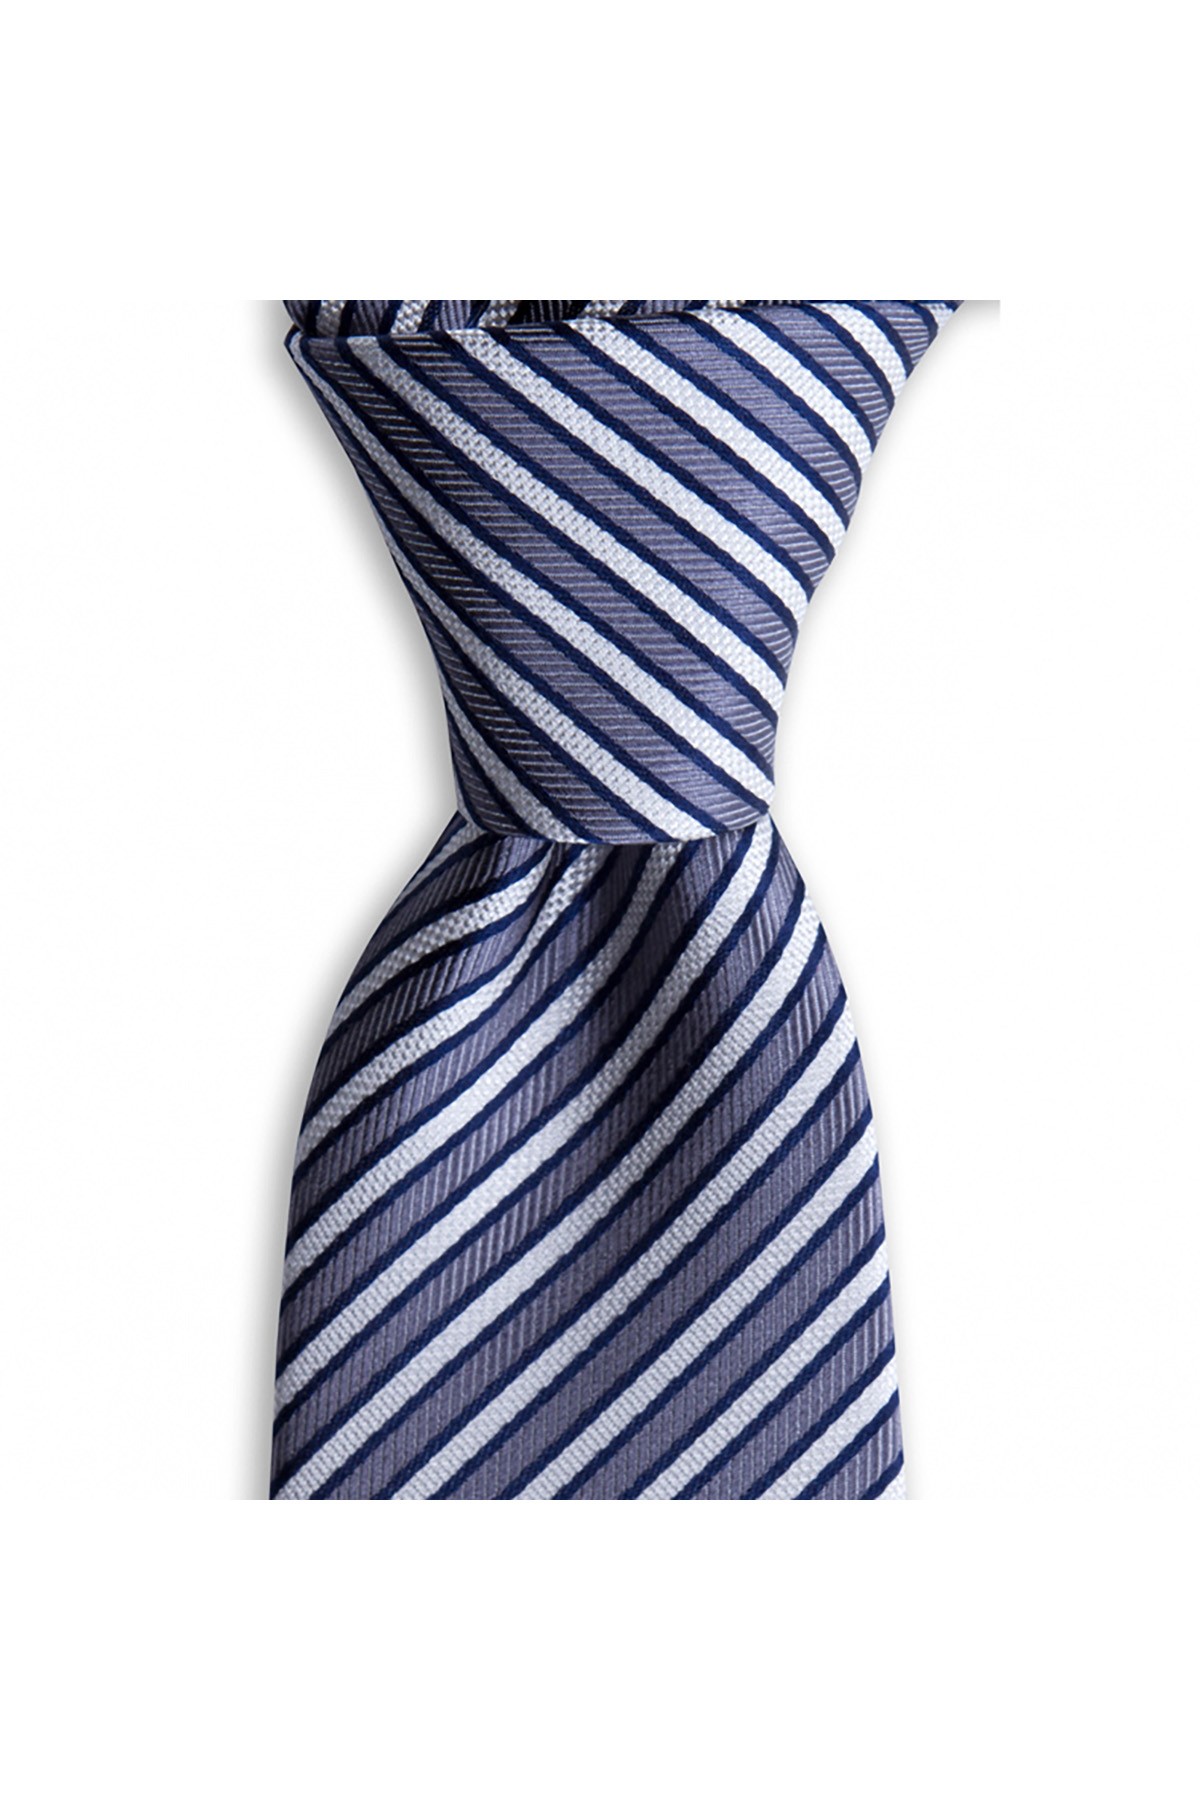 Çok çizgili 7,5 cm genişliğinde klasik ipek kravat - Gri